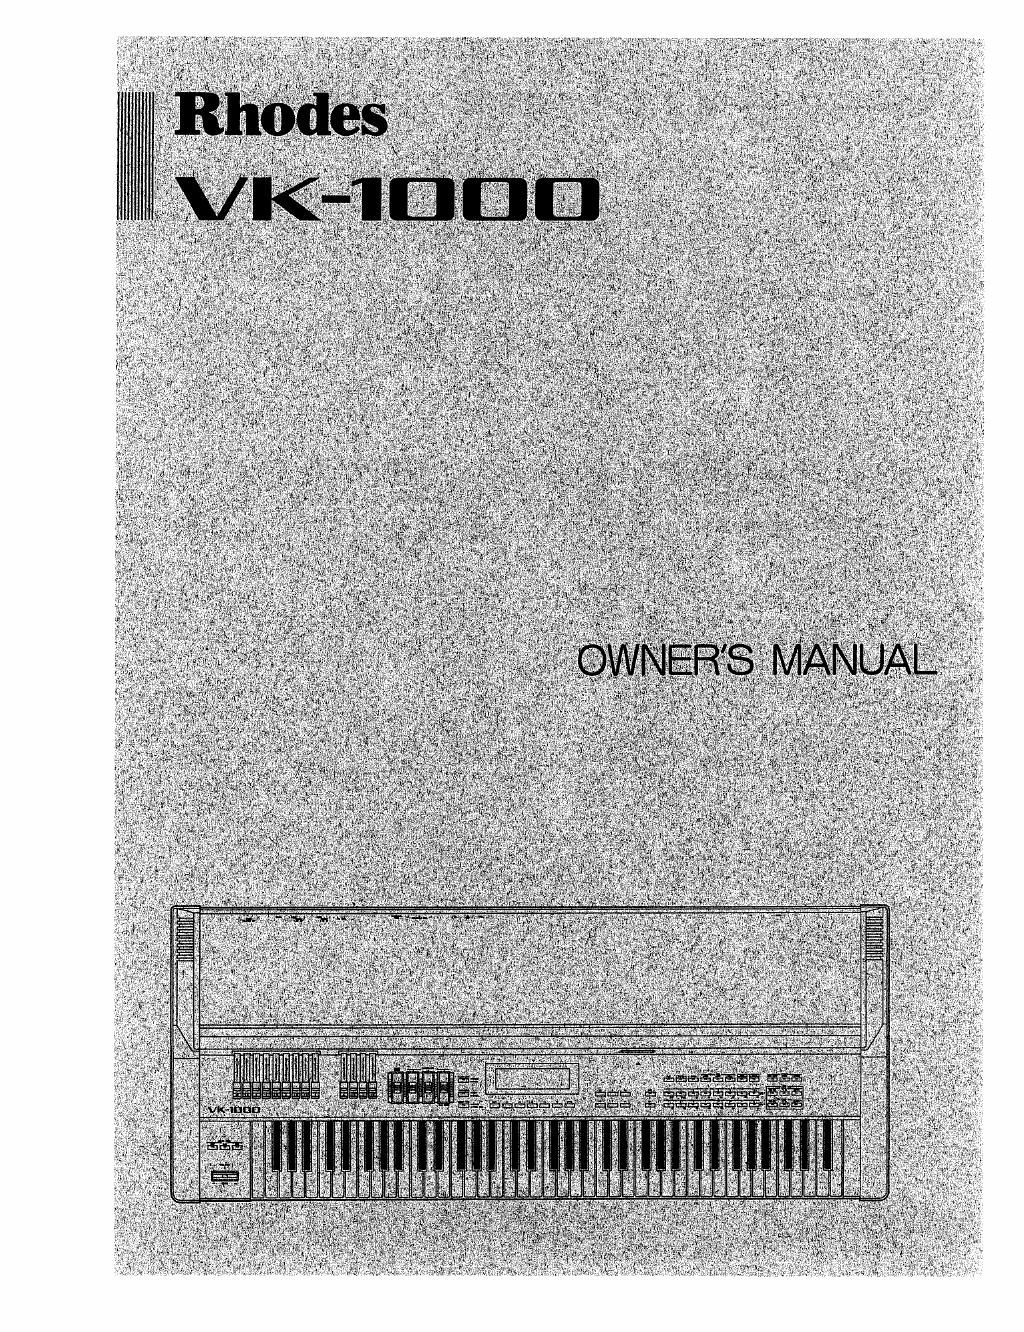 rhodes vk 1000 owner manual